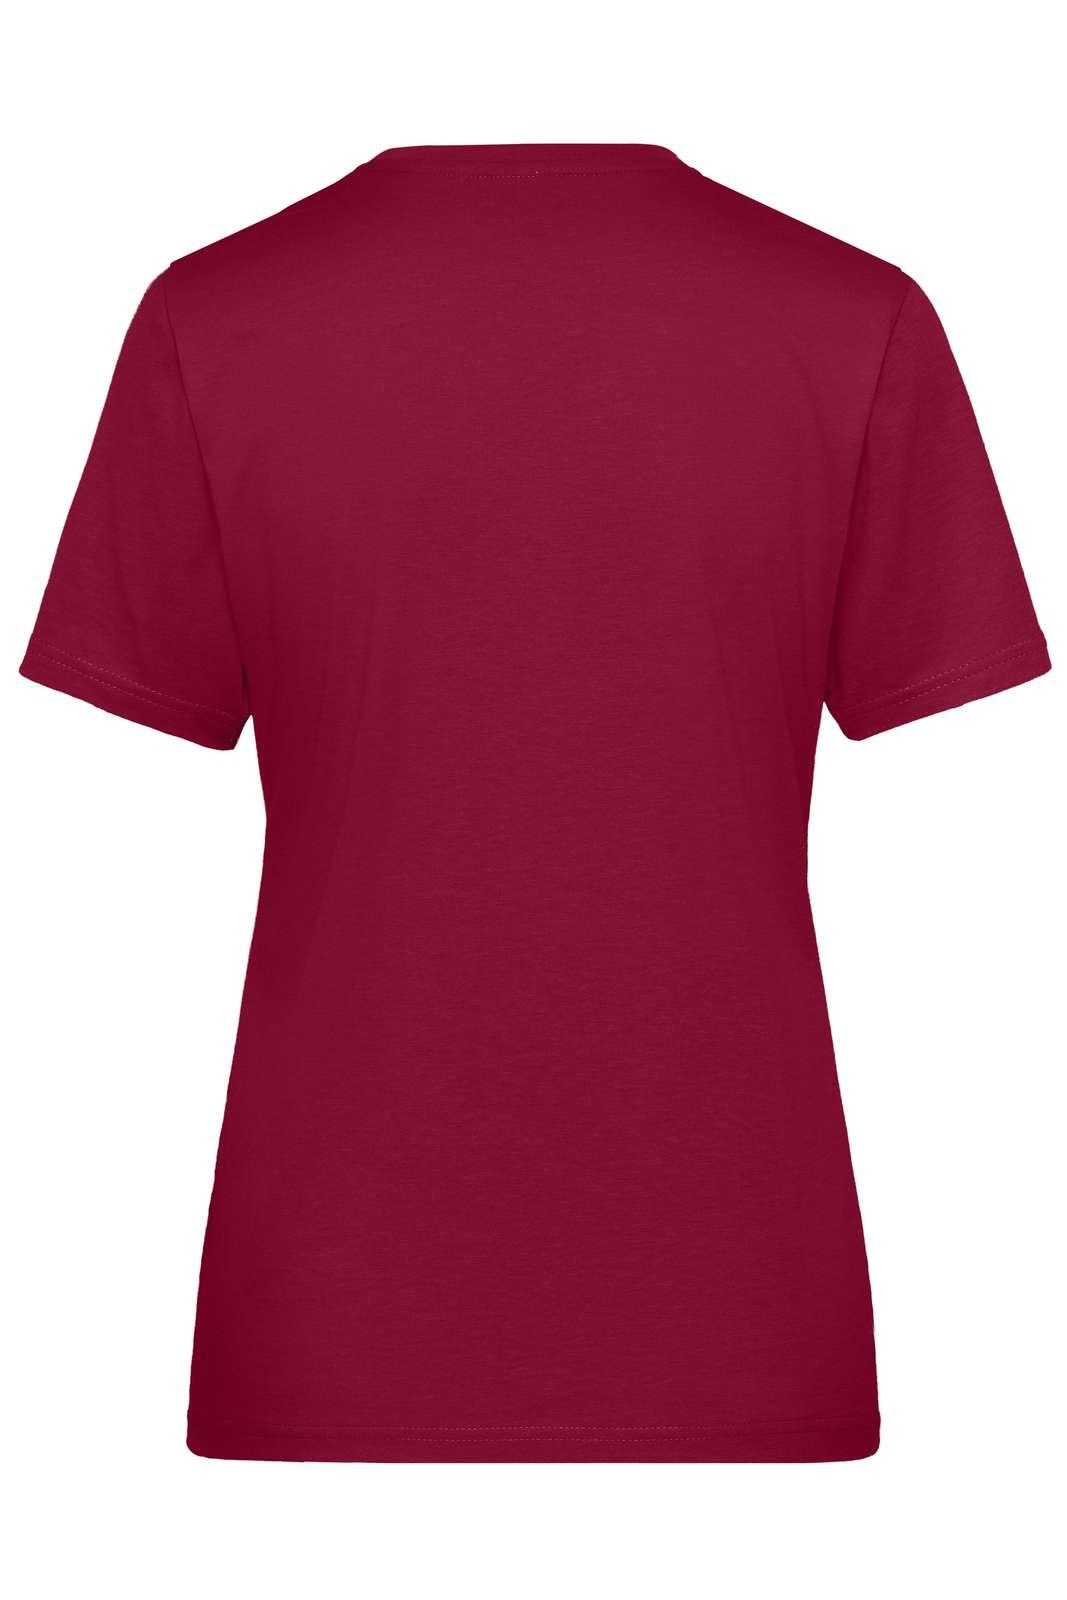 JN BIO T-SHIRT DAME - Arbejds T-shirt - JA Profil 